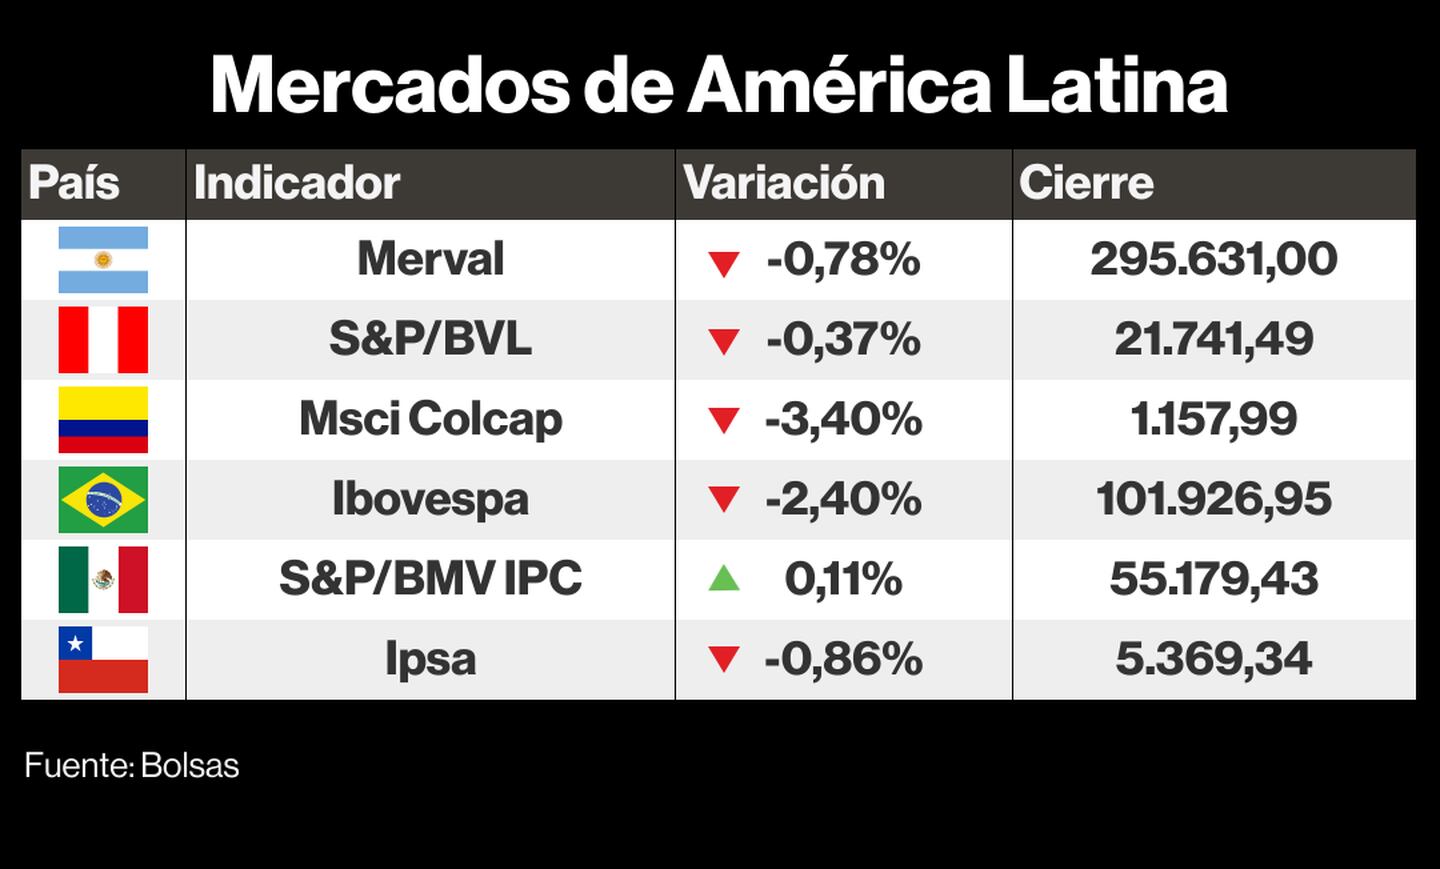 Mercados de América Latinadfd